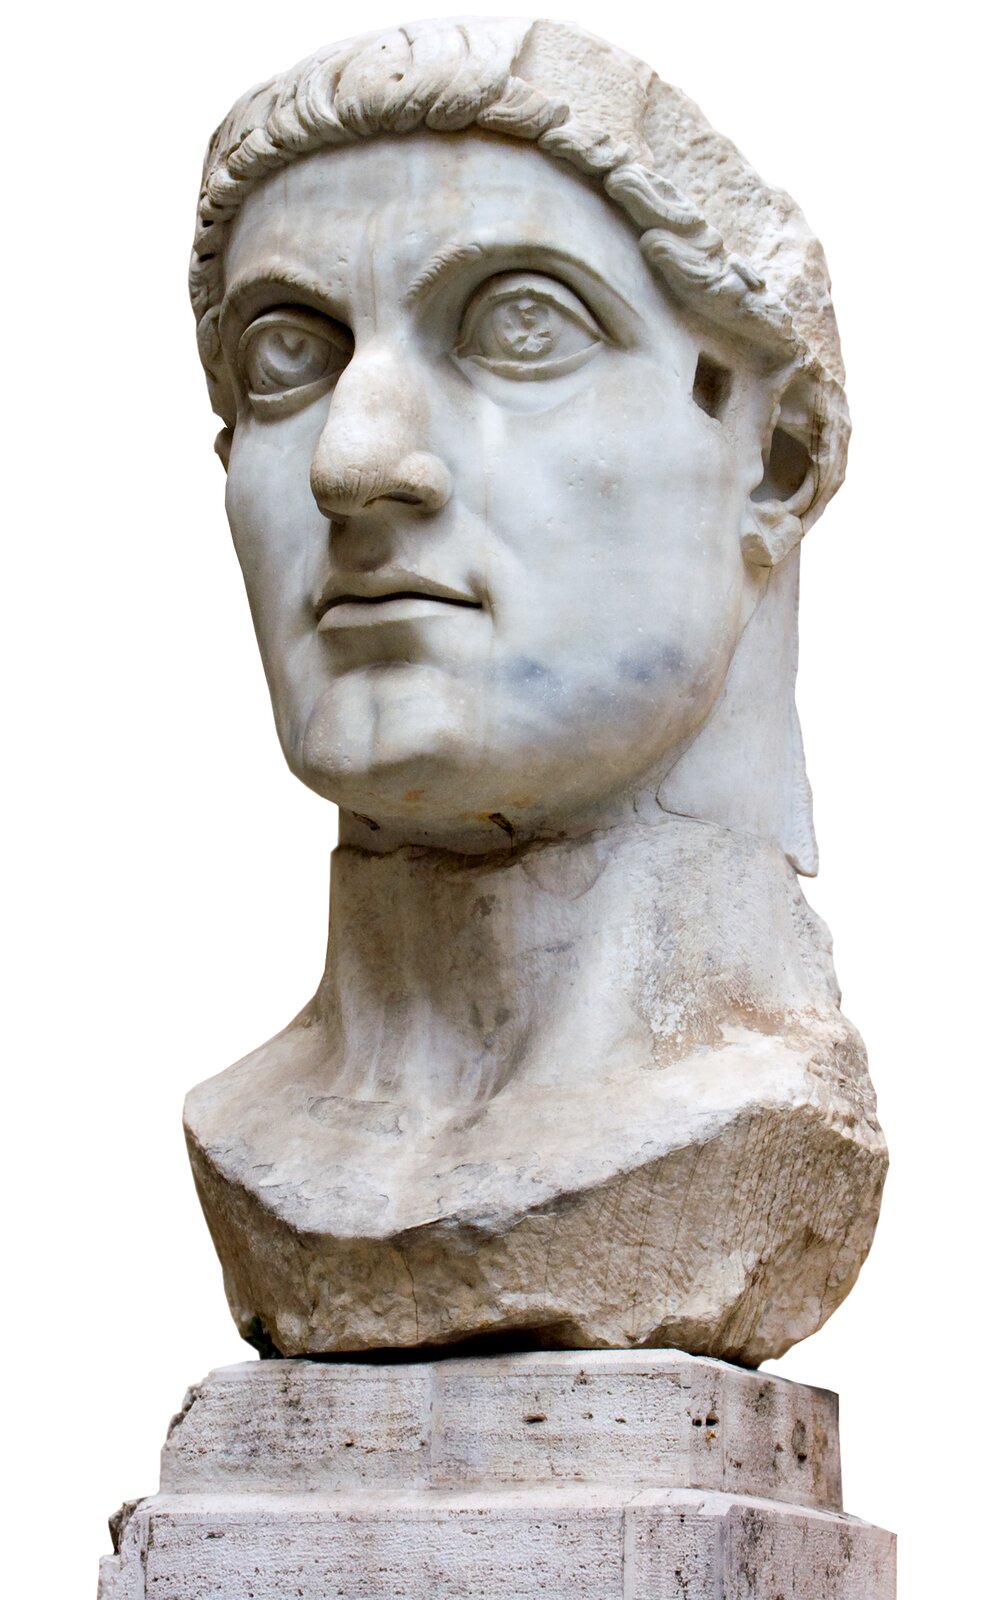 Na zdjęciu rzeźba głowy i szyi mężczyzny z jasnego kamienia. Młody mężczyzna z krótkimi włosami. Przed uchem wycięty kwadrat.